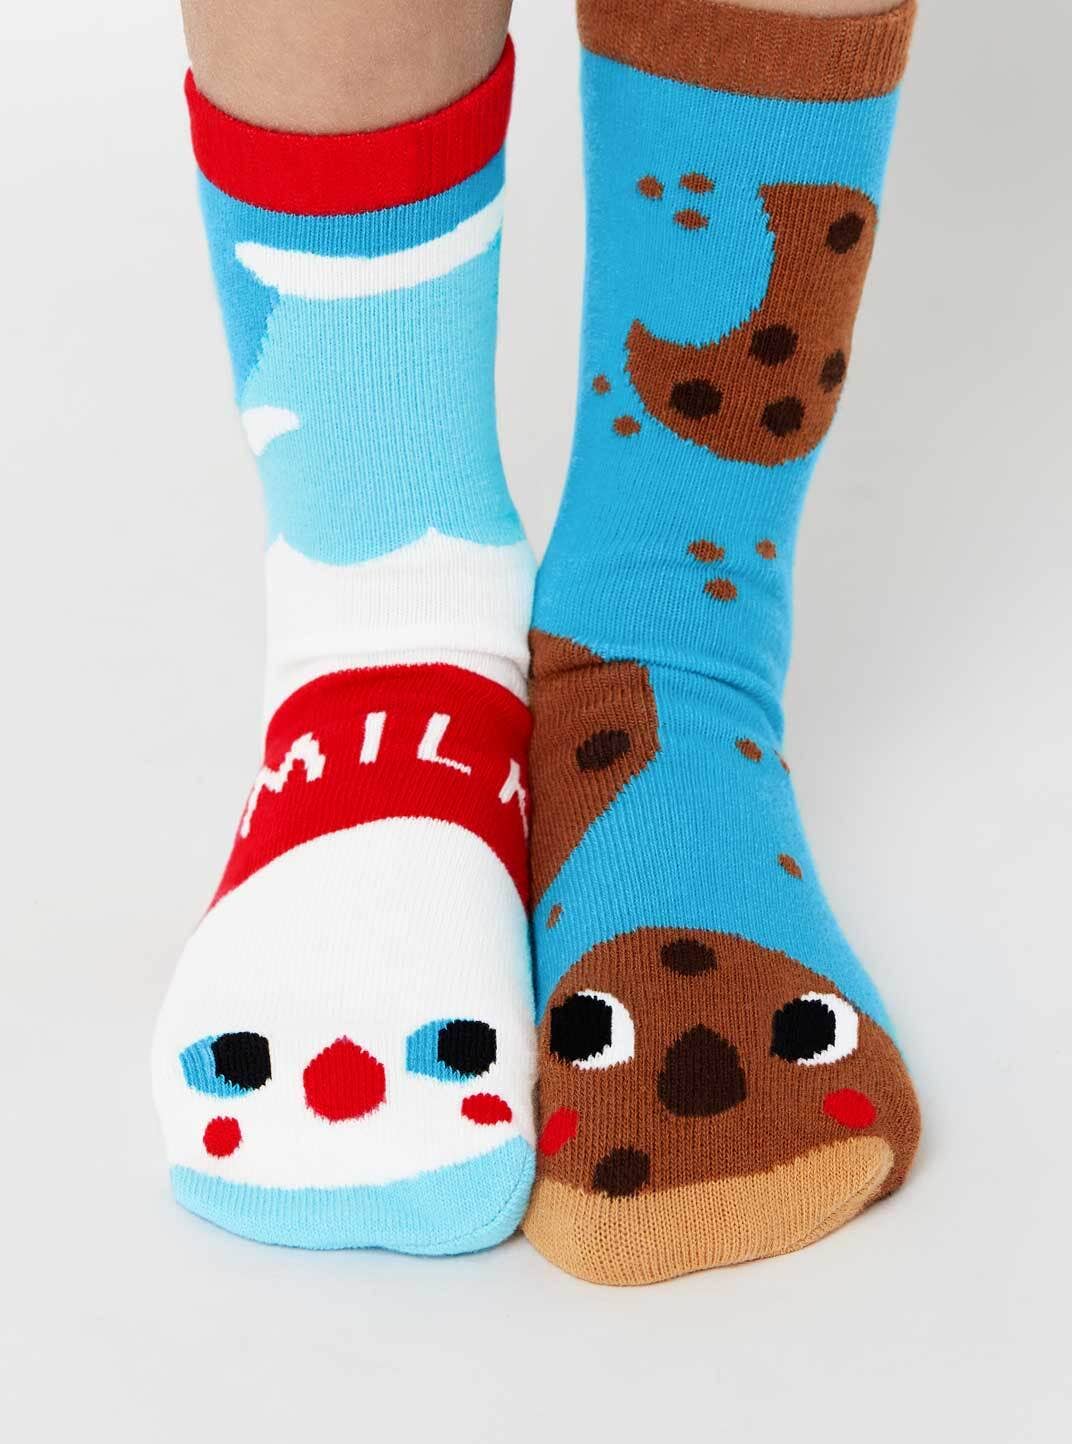 Milk & Cookies | Adult Socks | Mismatched Fun Socks